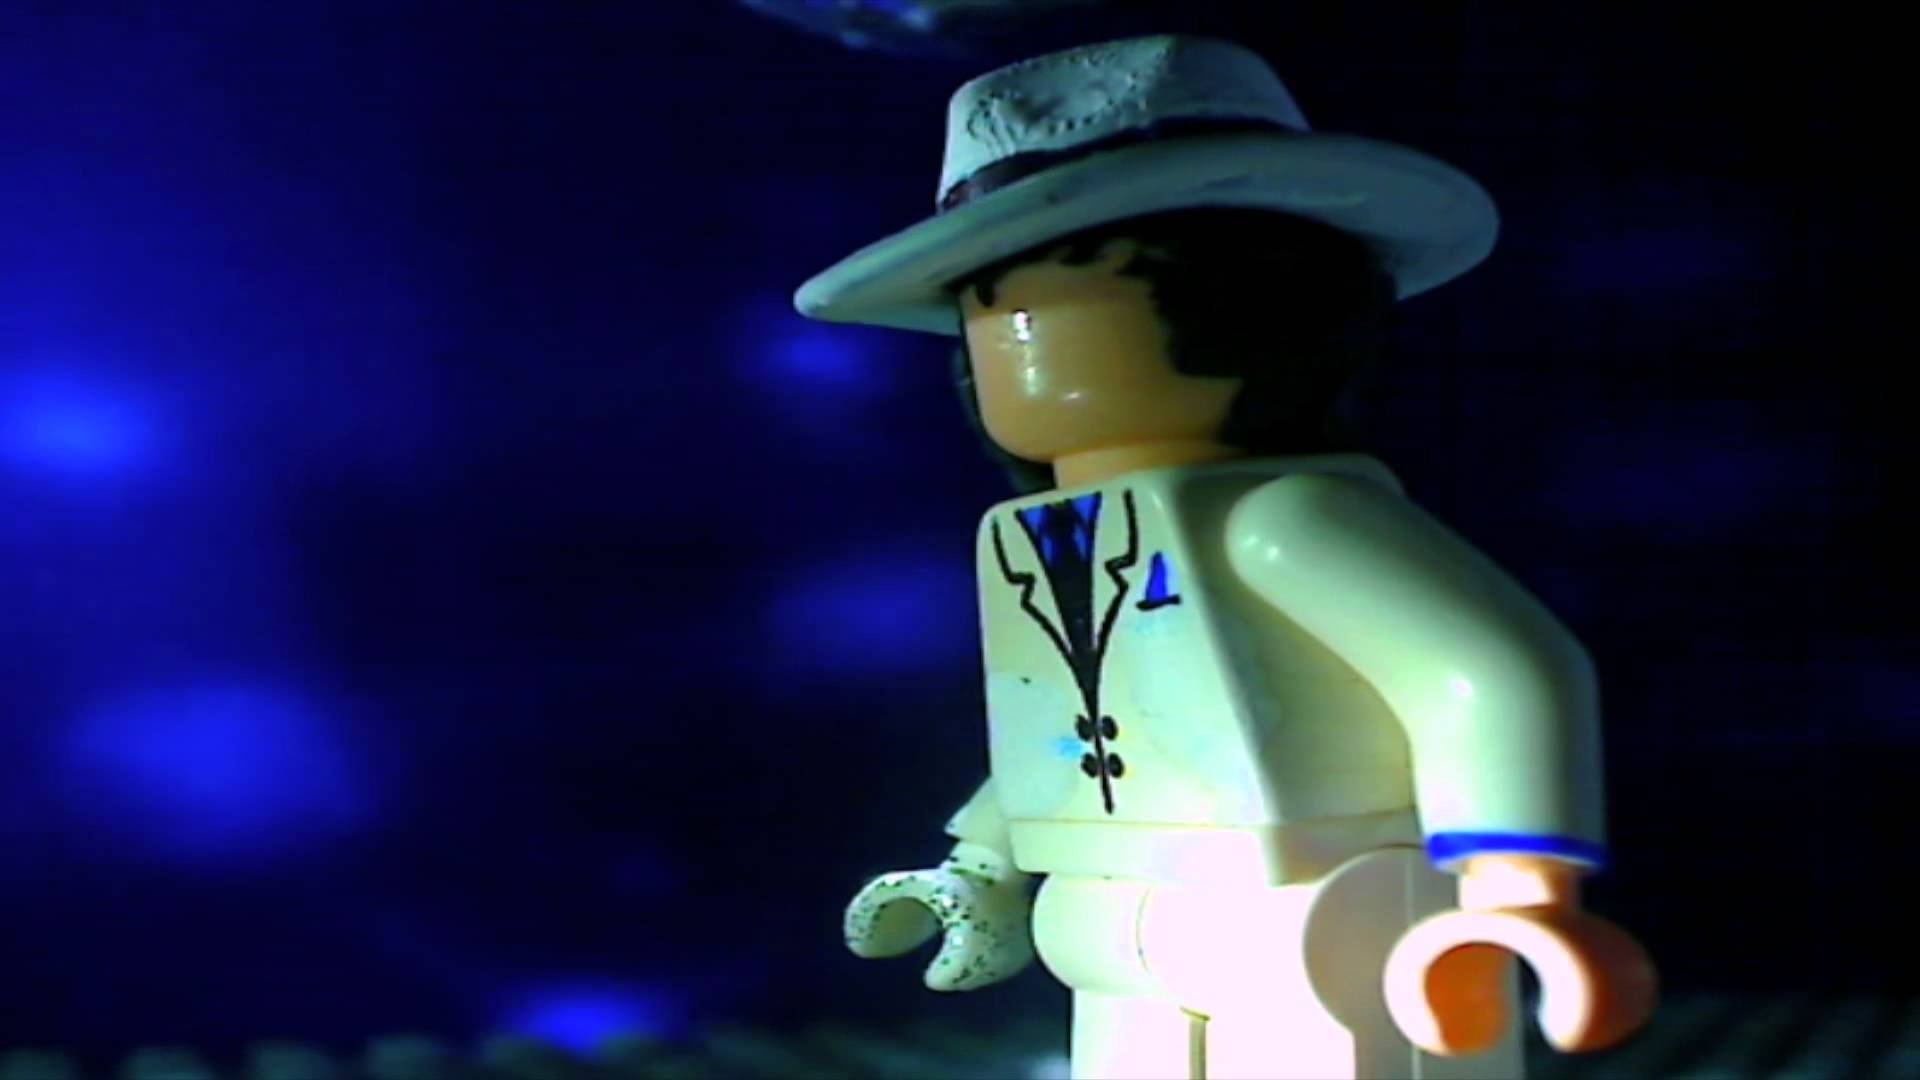 Lego Michael Jackson Appreciation Video